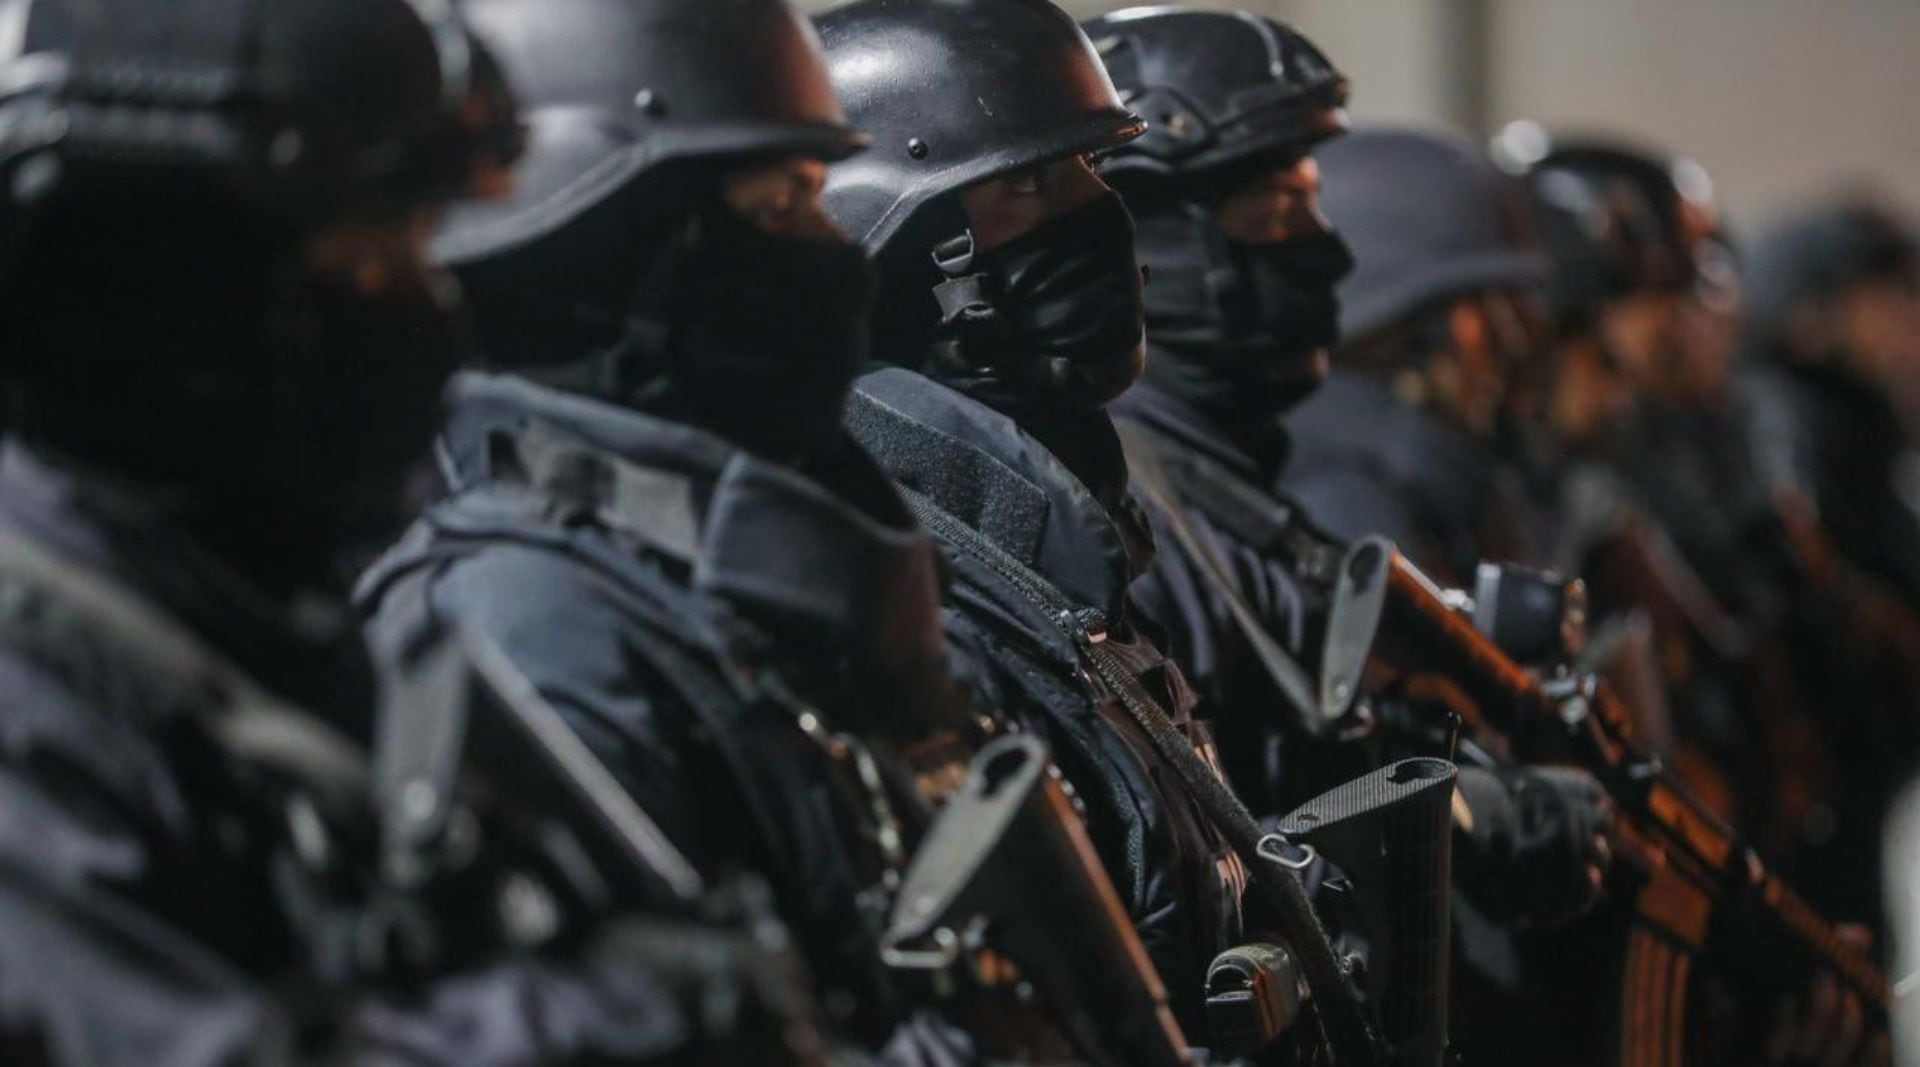 La ola de violencia perpetrada por bandas ligadas a los cárteles mexicanos causó el despliegue de más de 19 mil operativos de la Policía y las Fuerzas Armadas de Ecuador. (Foto: Twitter/@LassoGuillermo)